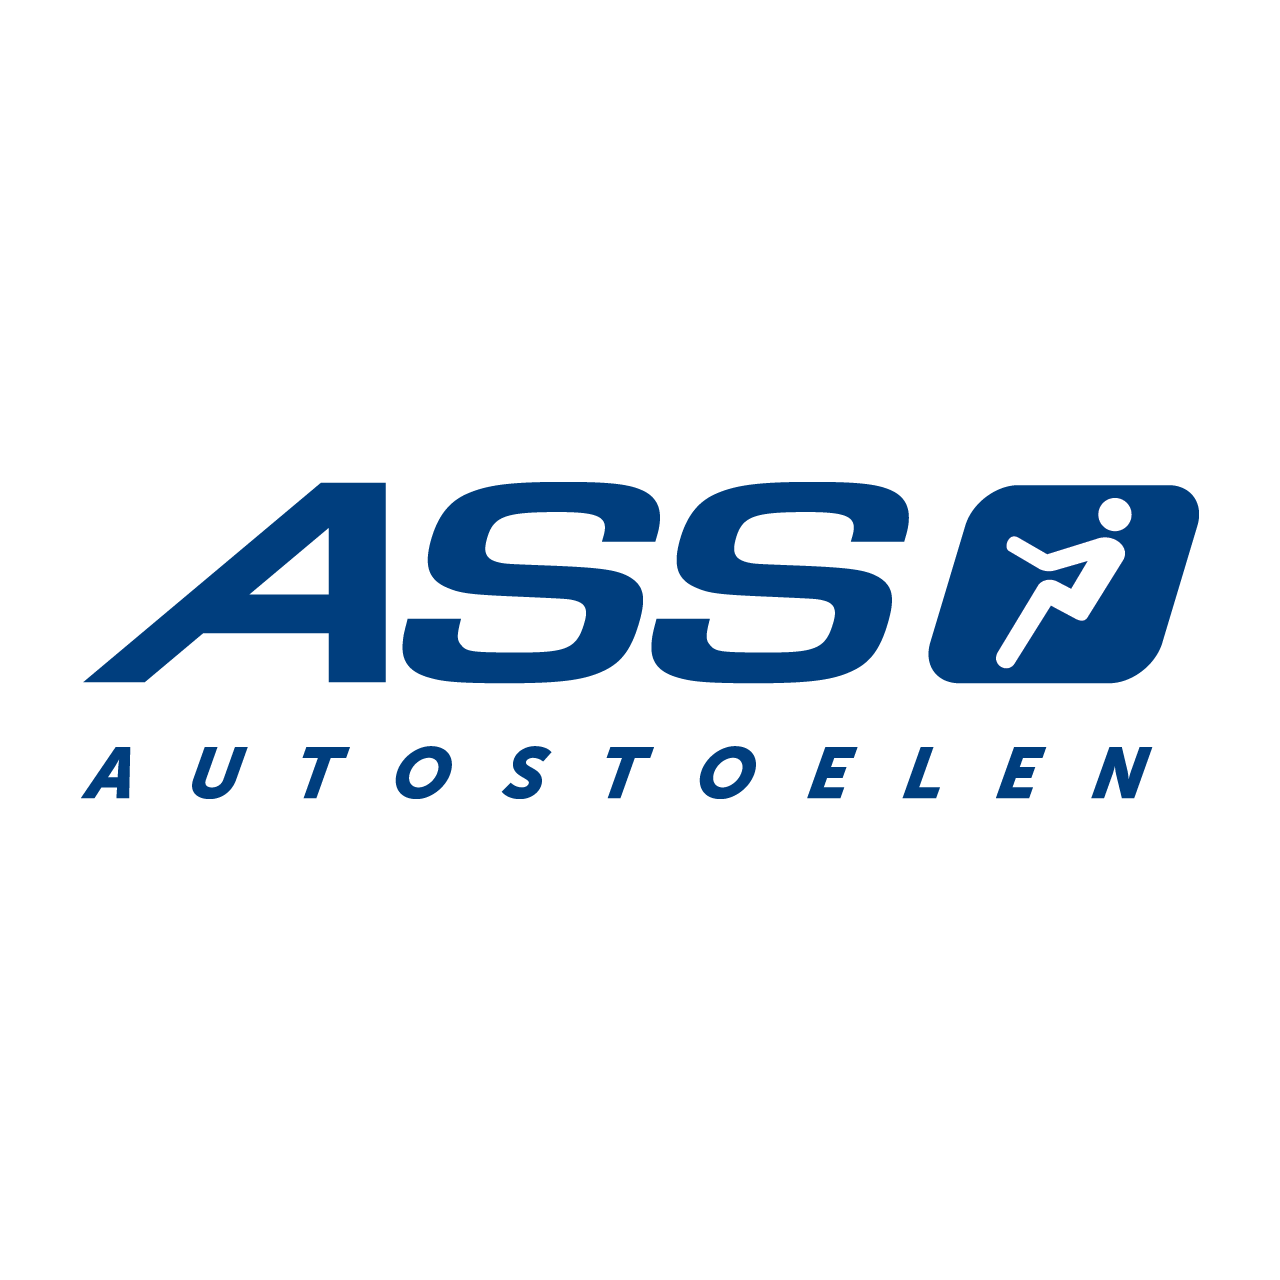 Product verzekering haat ASS Autostoelen - Ontspannen autorijden zonder klachten